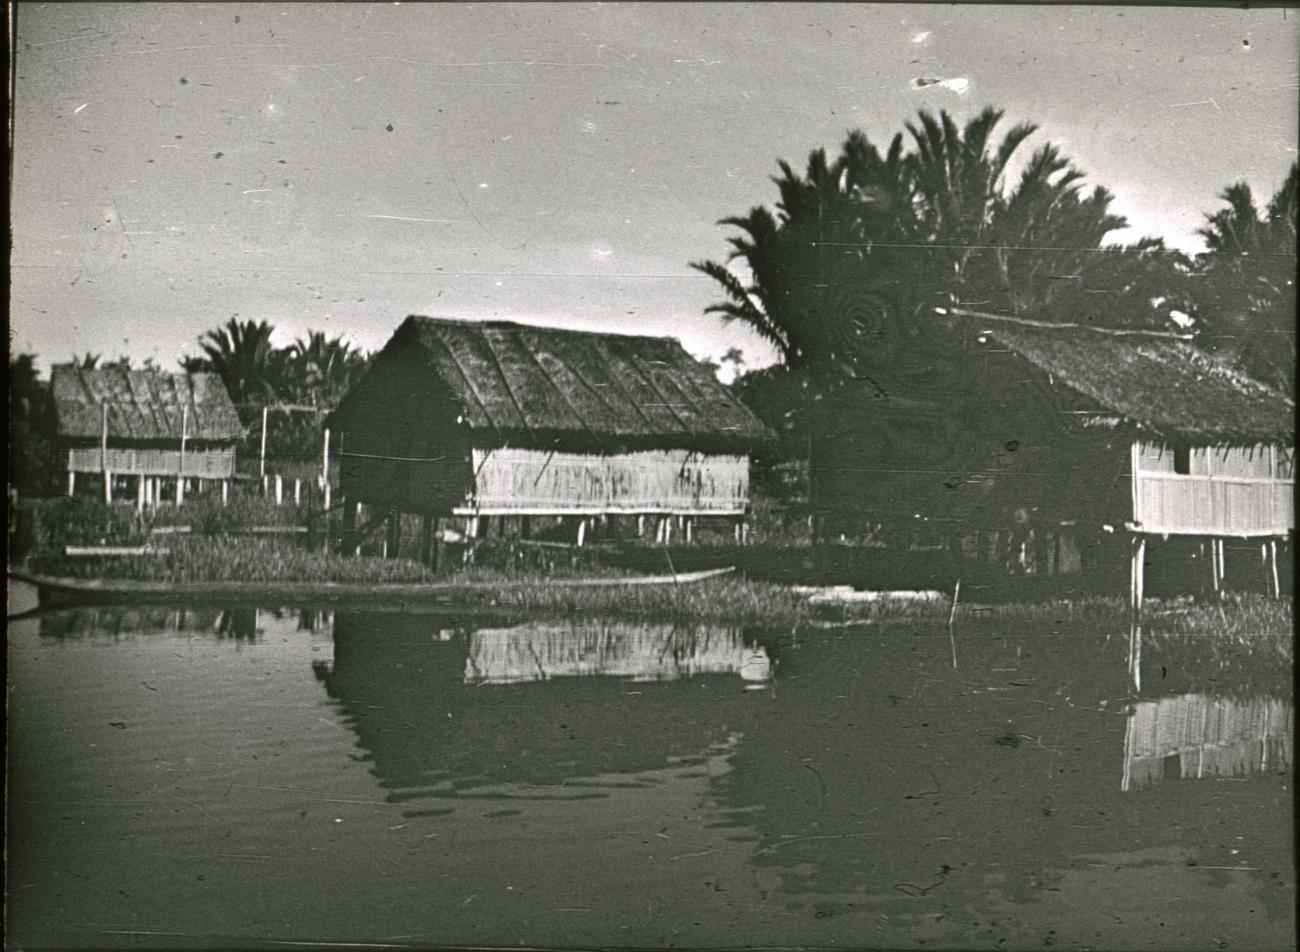 BD/309/352 - 
Paalwoningen aan de rivier in het dorp Kasueri
